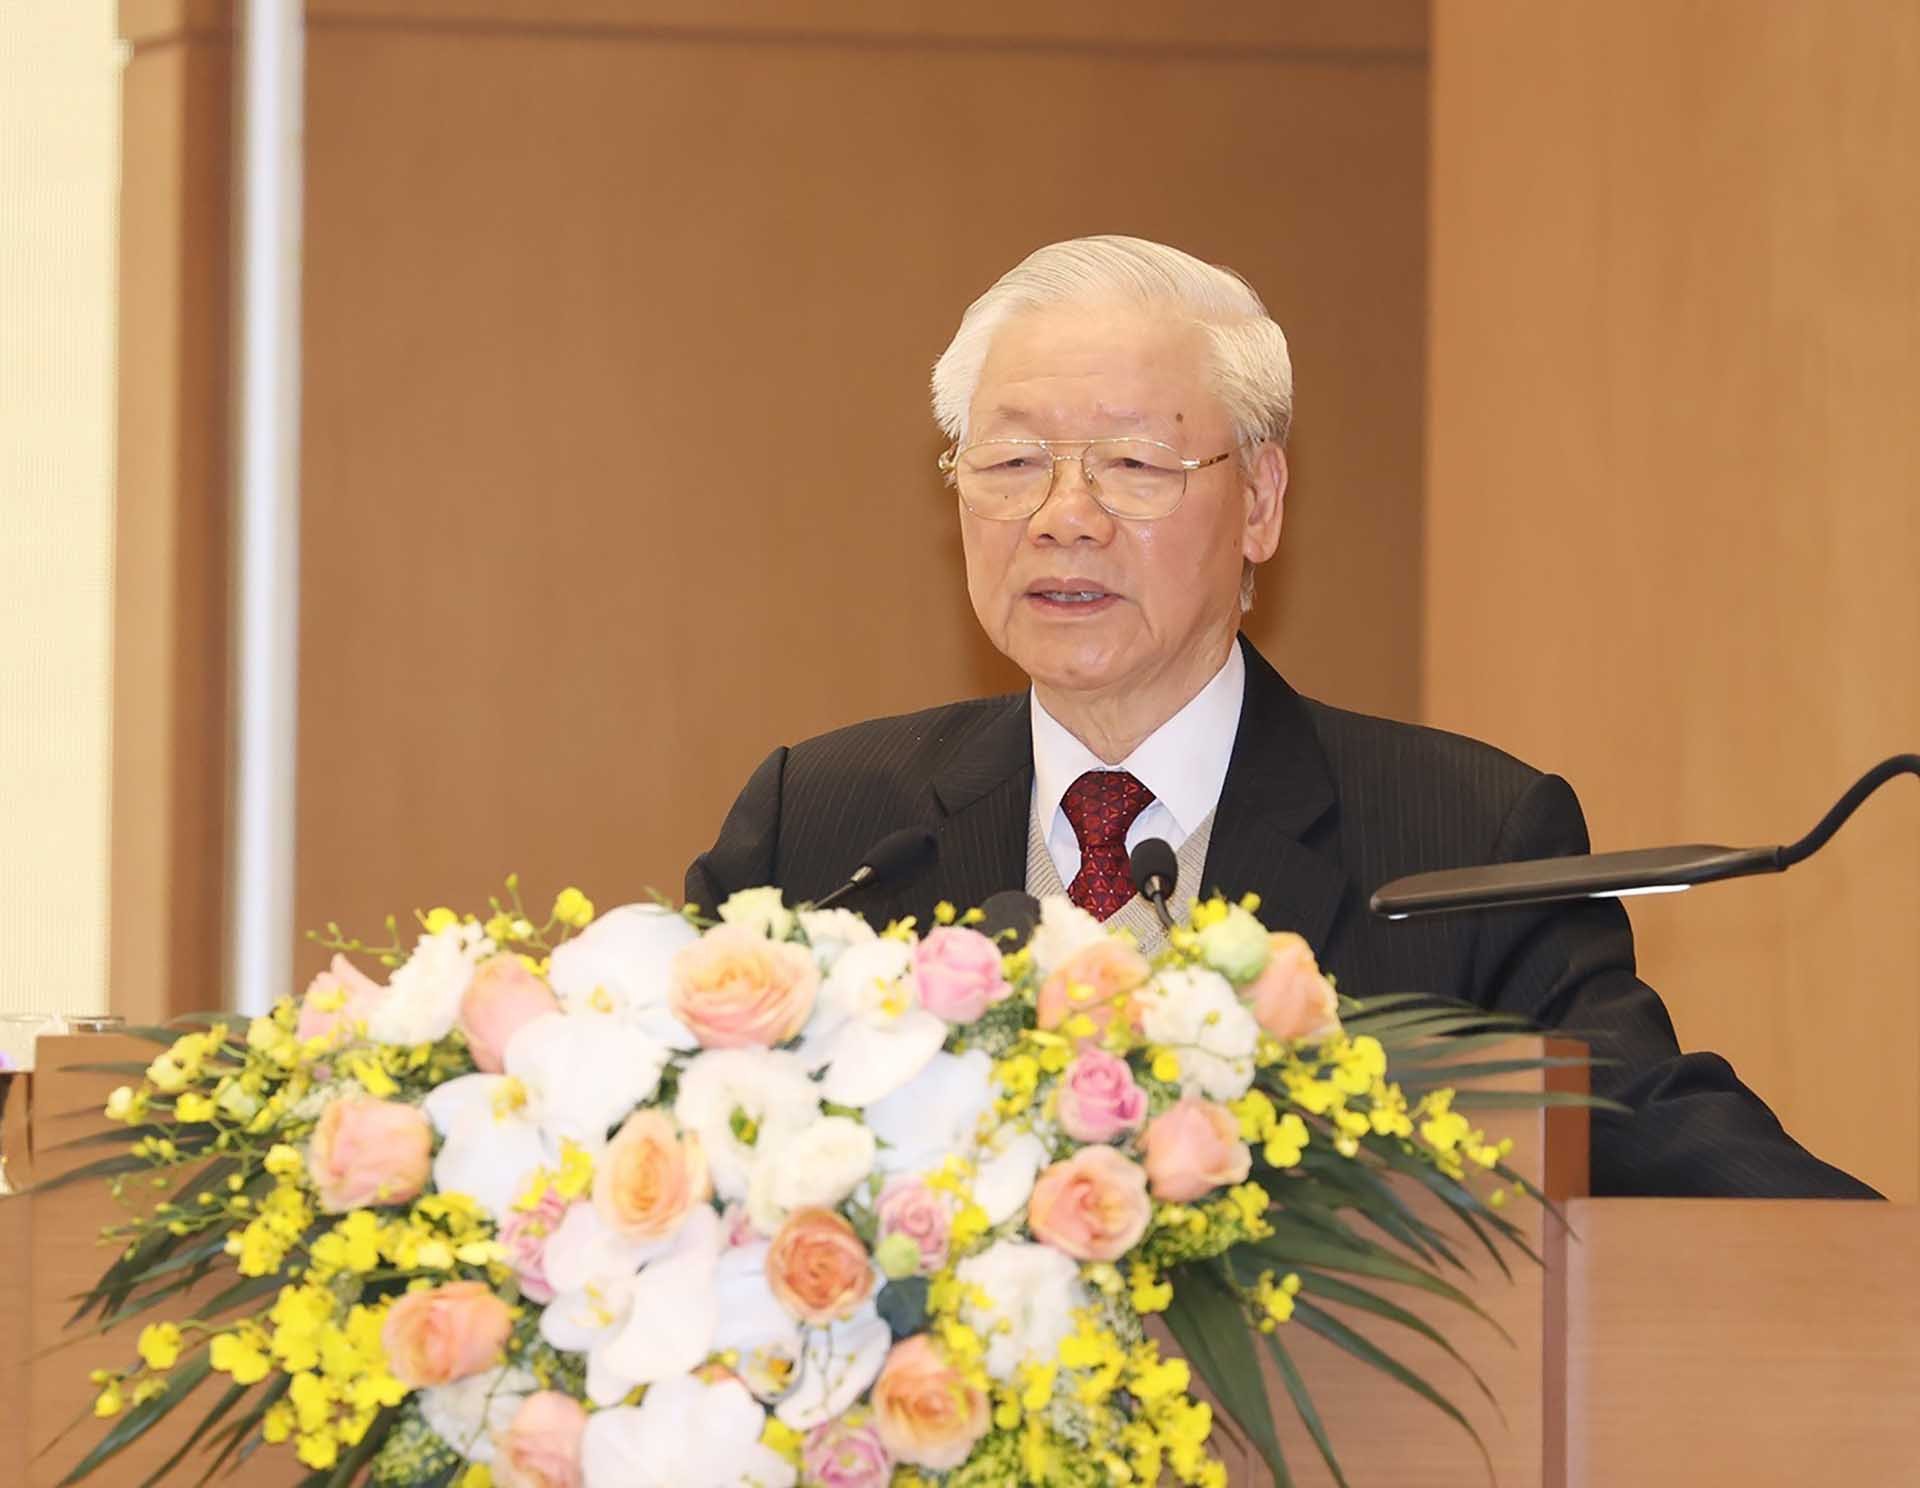 Tổng Bí thư Nguyễn Phú Trọng phát biểu chỉ đạo hội nghị. (Nguồn: TTXVN)